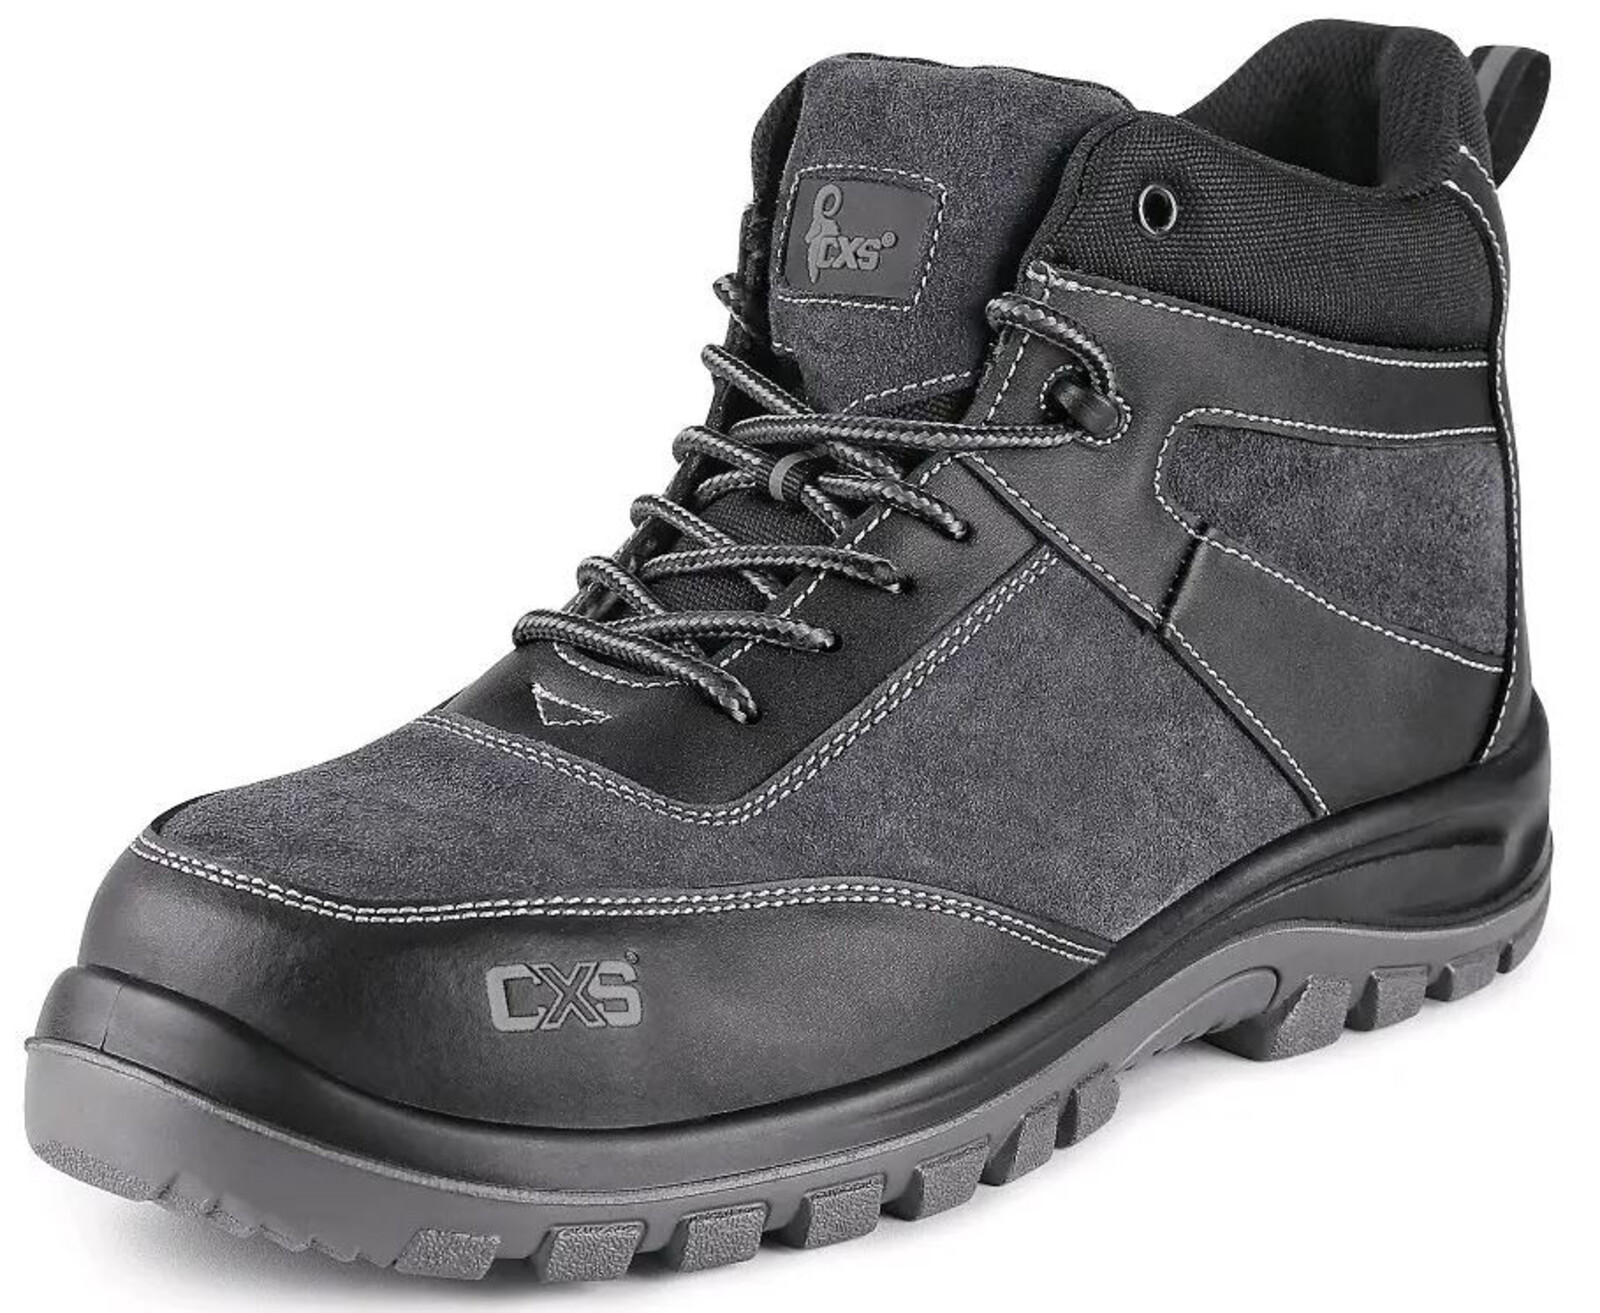 Pracovná členková obuv CXS Profit Win O1 FO SRC - veľkosť: 45, farba: čierna/sivá